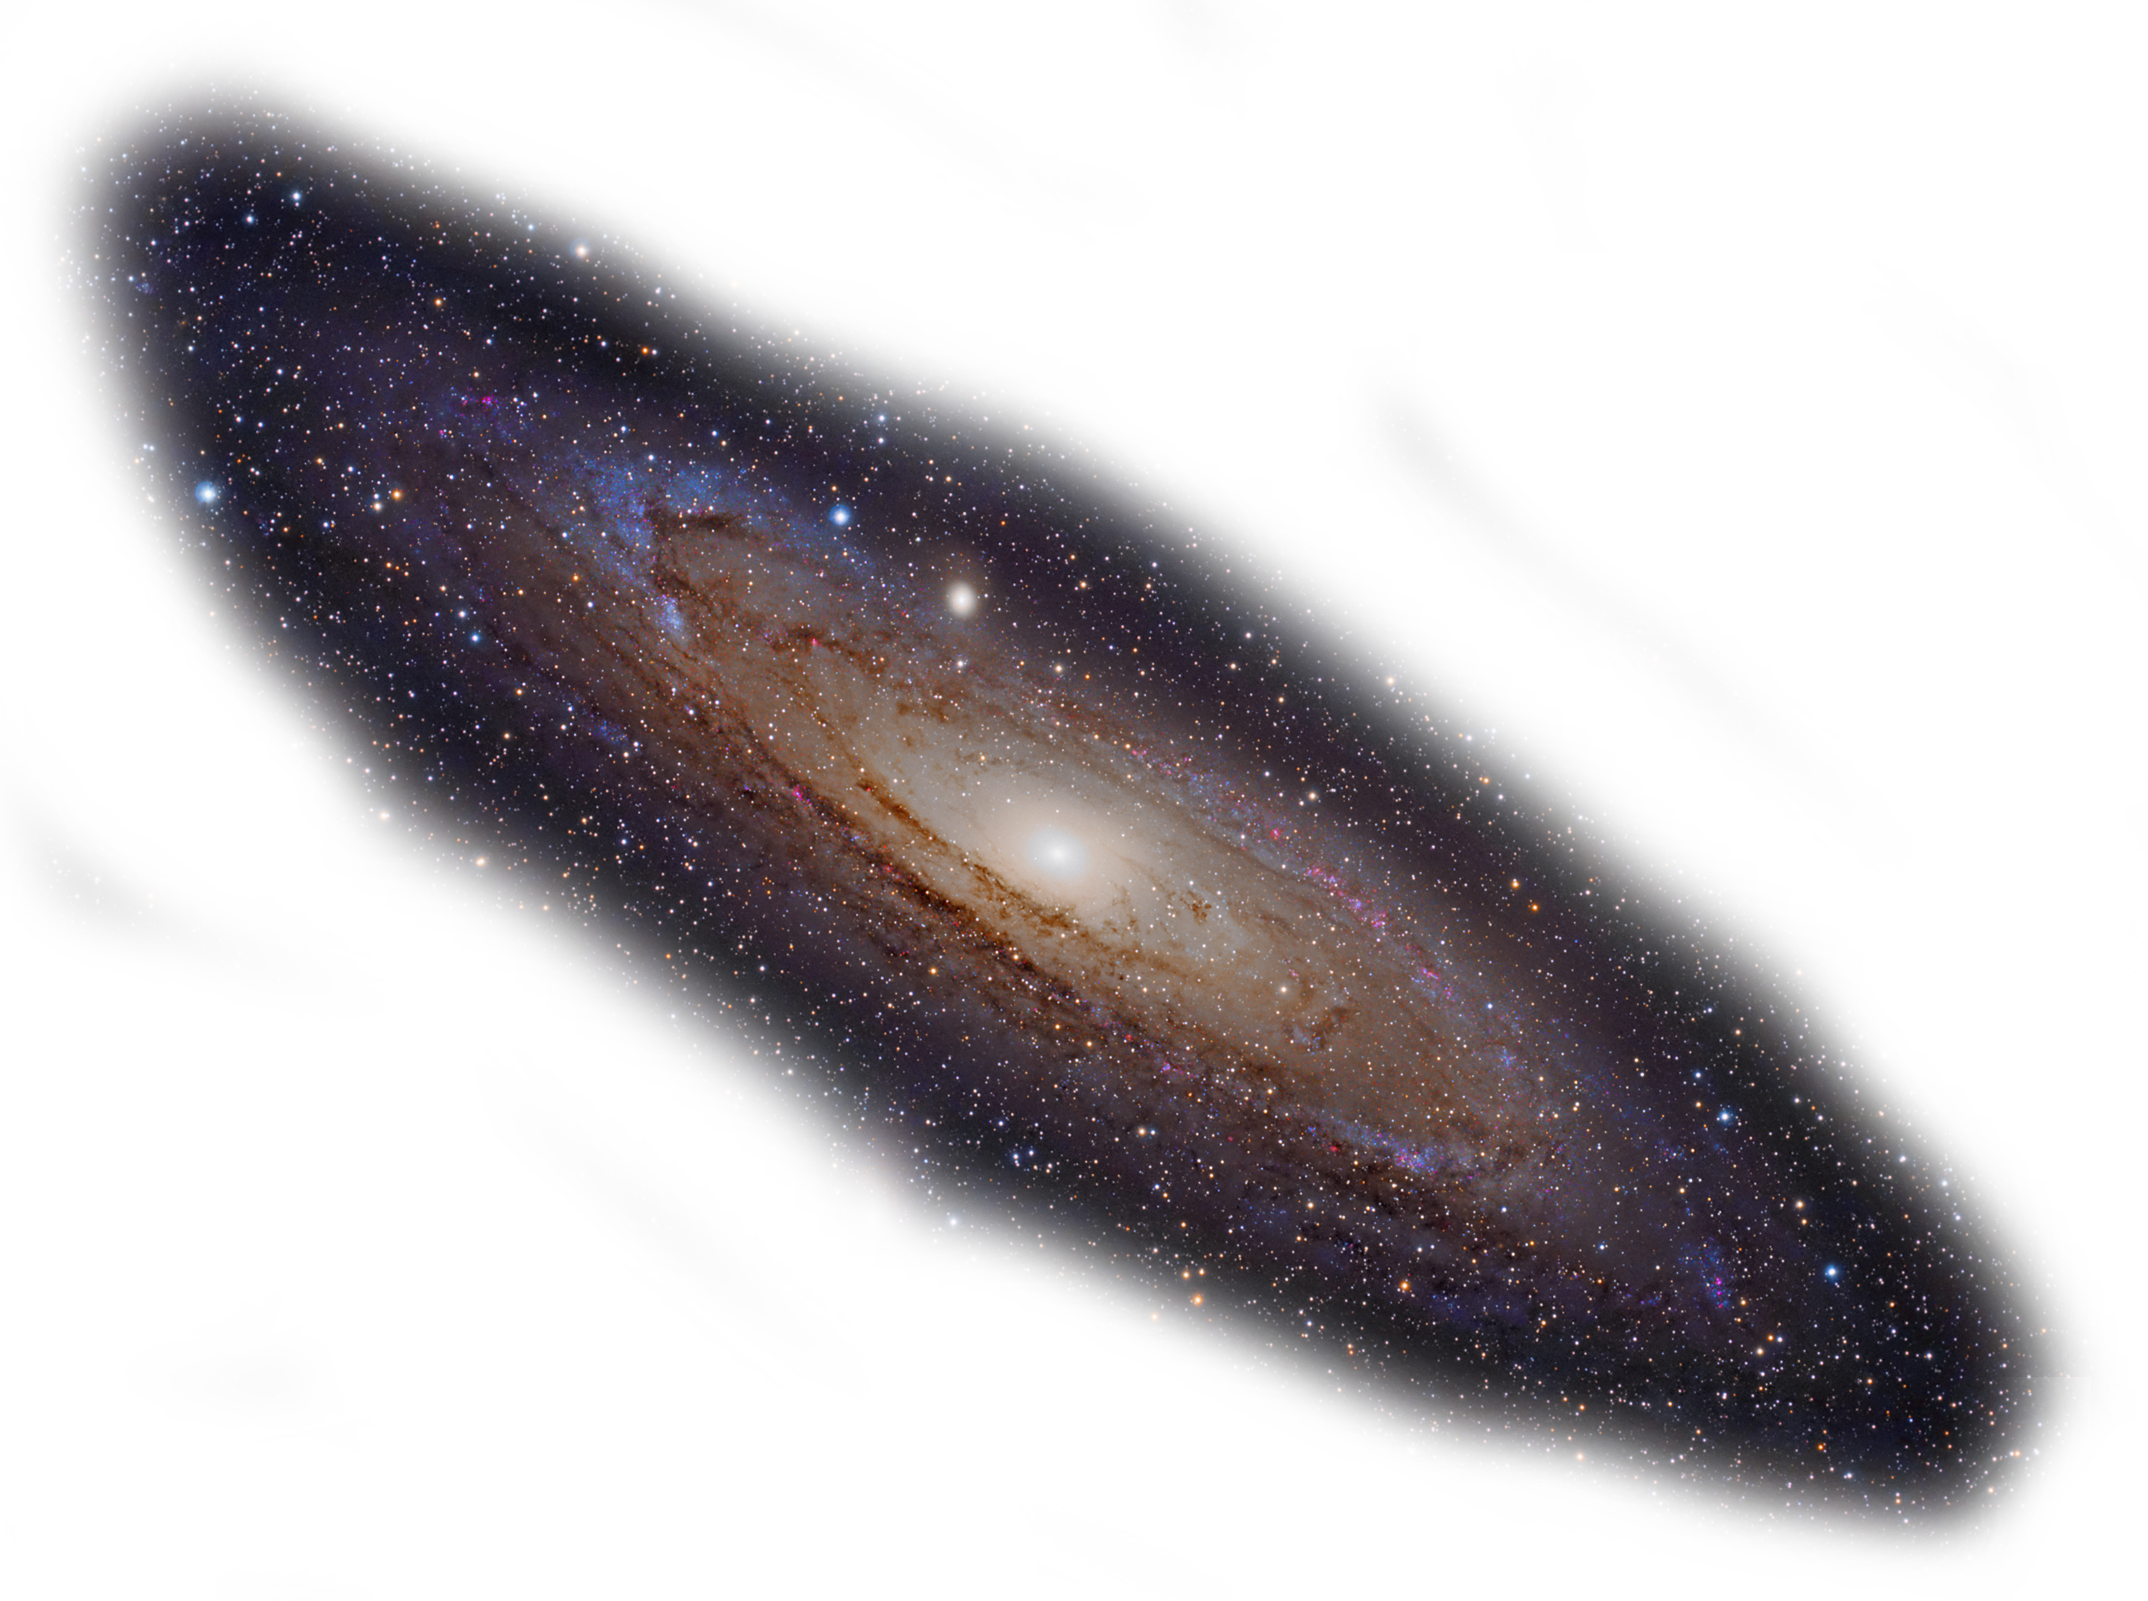 Galaxy PNG, tải về miễn phí: Các hình ảnh về vũ trụ đều có sức hút đặc biệt và mang đến cho người khám phá cảm giác thứ thiệt tuyệt vời. Dưới đây là Galaxy PNG, bạn có thể tải về miễn phí và tận hưởng hình ảnh tuyệt đẹp này.